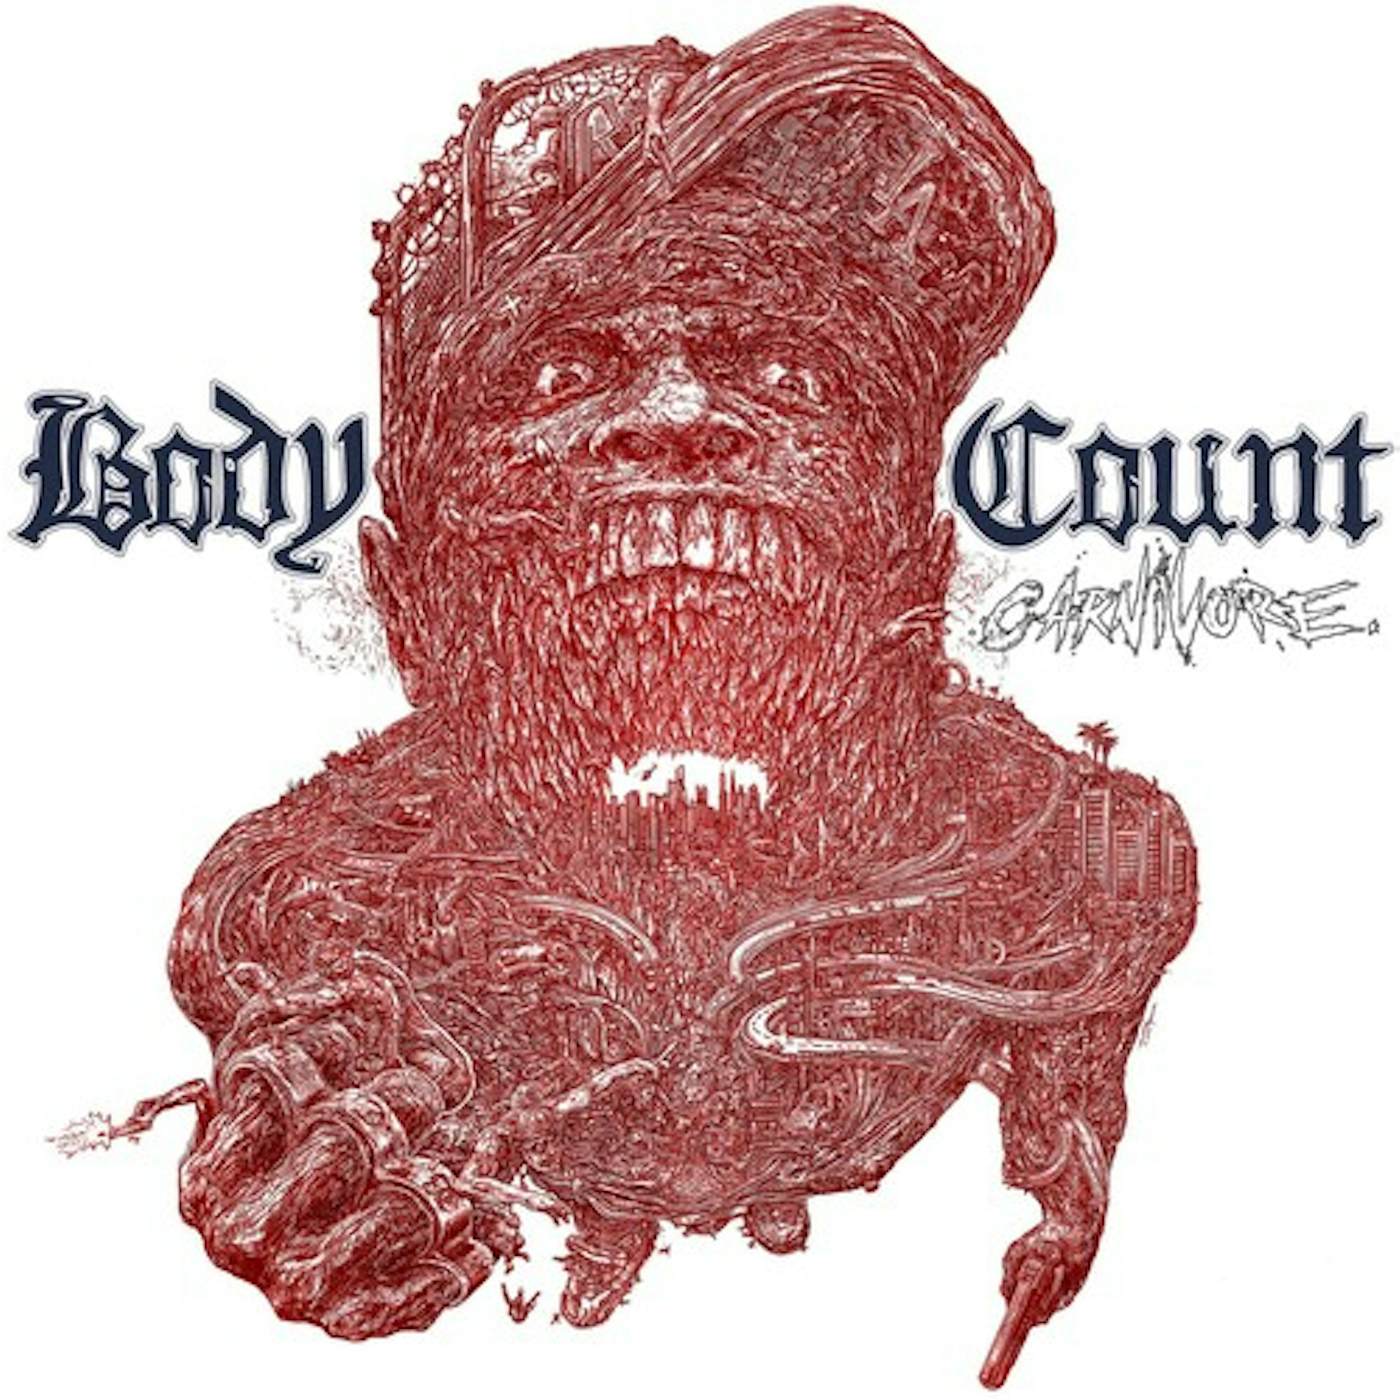 Body Count Carnivore Vinyl Record